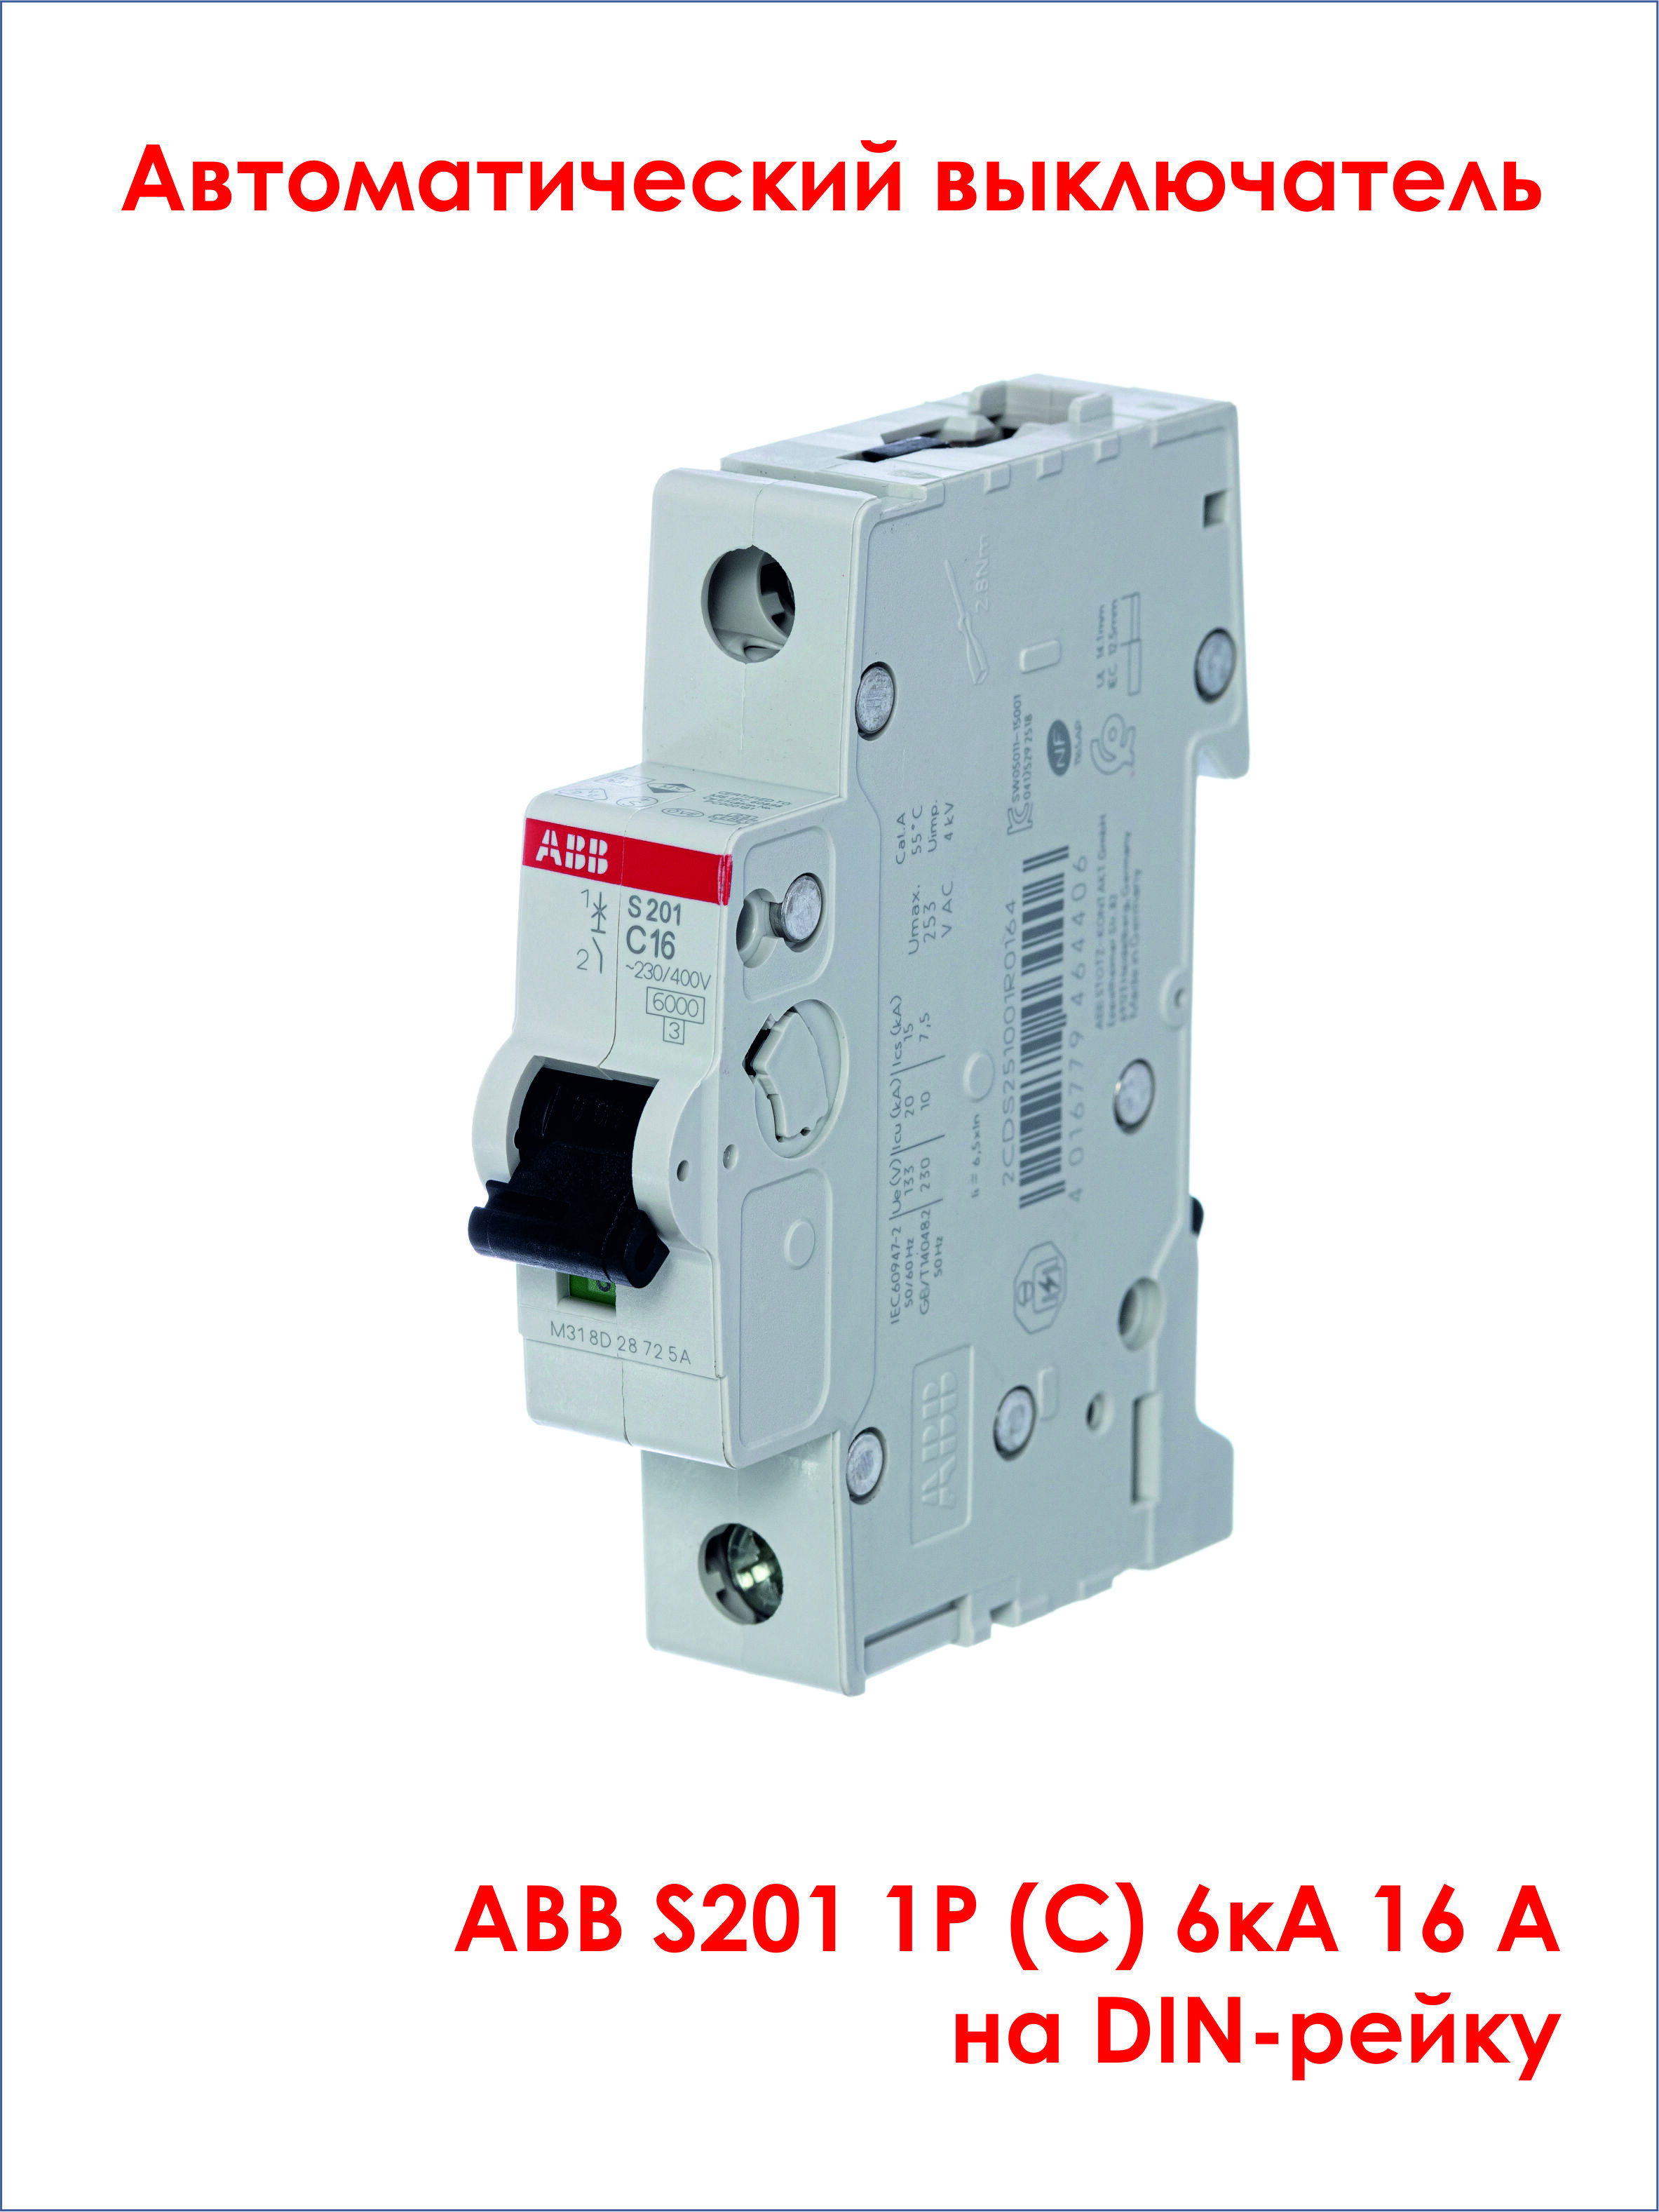 Автоматический выключатель дифференциального тока abb. ABB диф автомат dsh201r c16 ac30. Автомат ABB dsh201r c20 ac30. Дифф автомат ABB ds201 c20 a30. Автоматический выключатель ABB 16а.